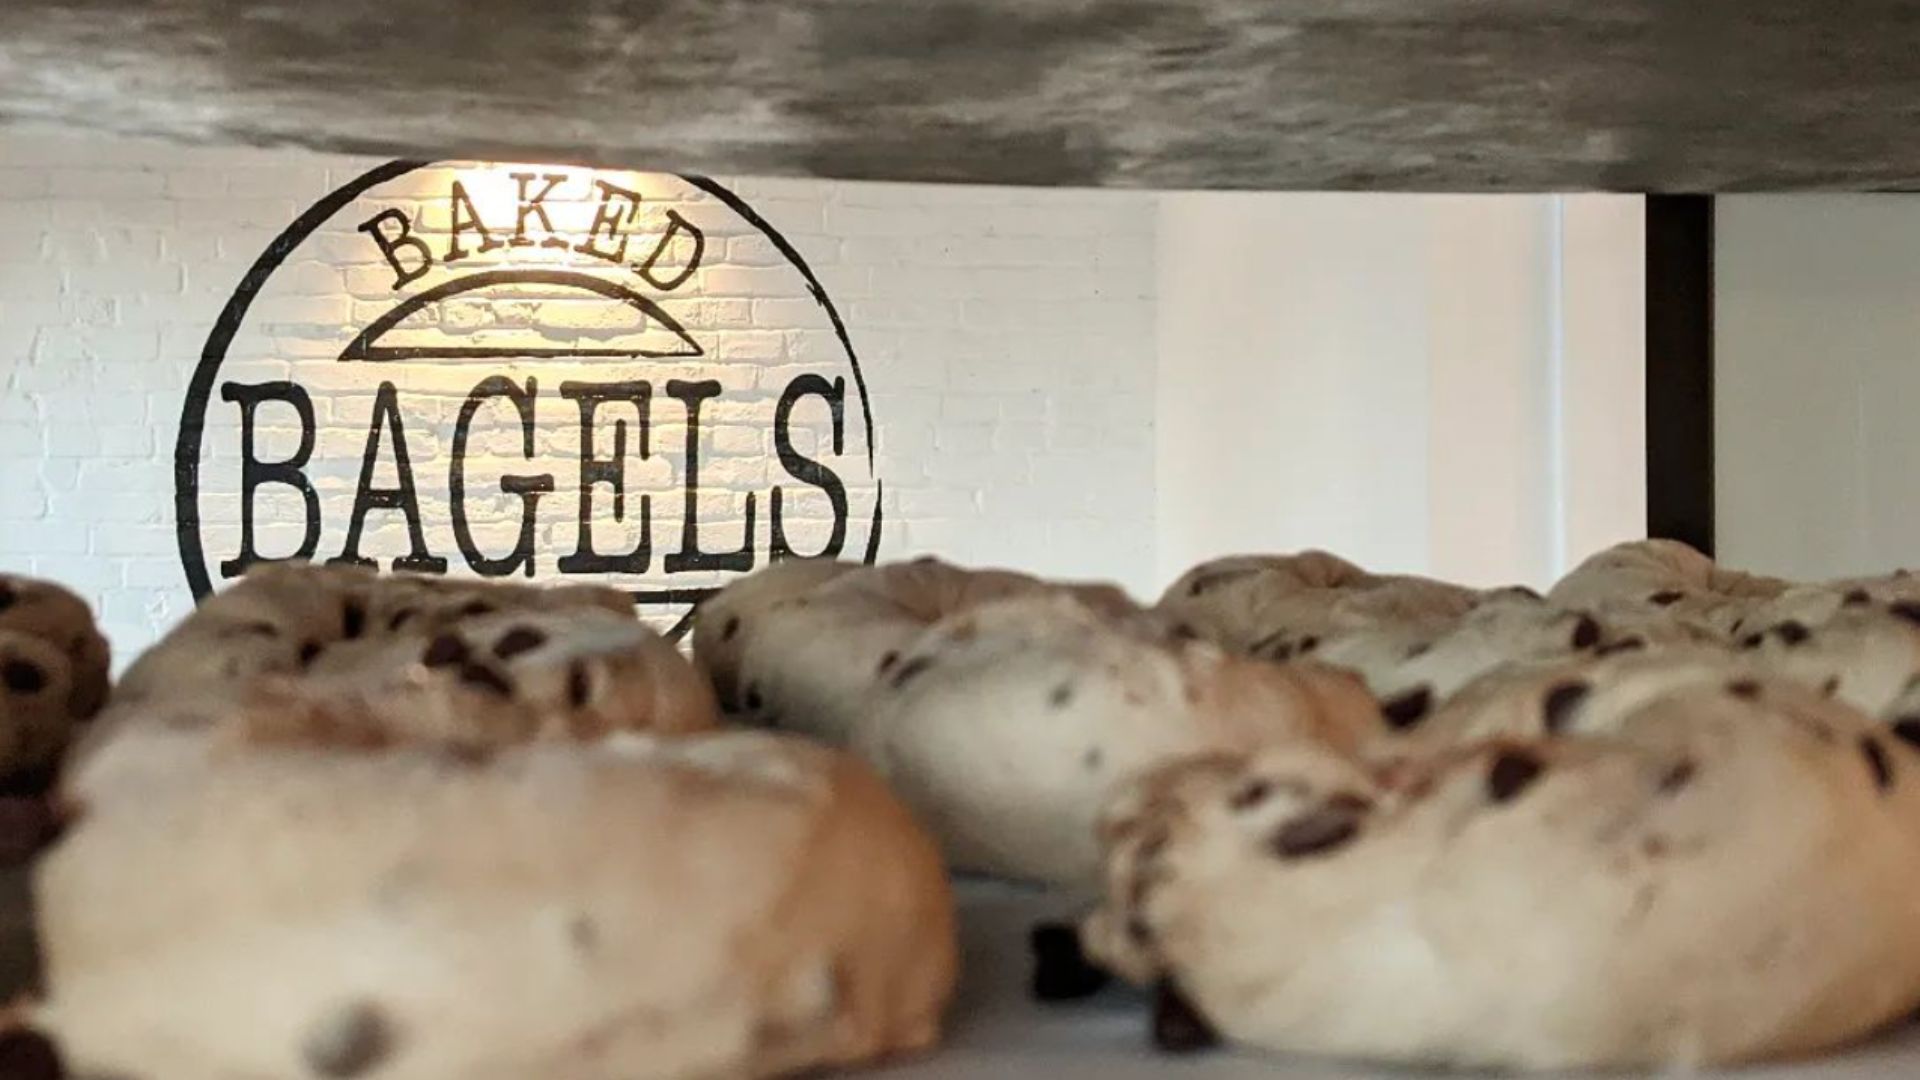 St. Louis newest bagel shop is ready to schmear